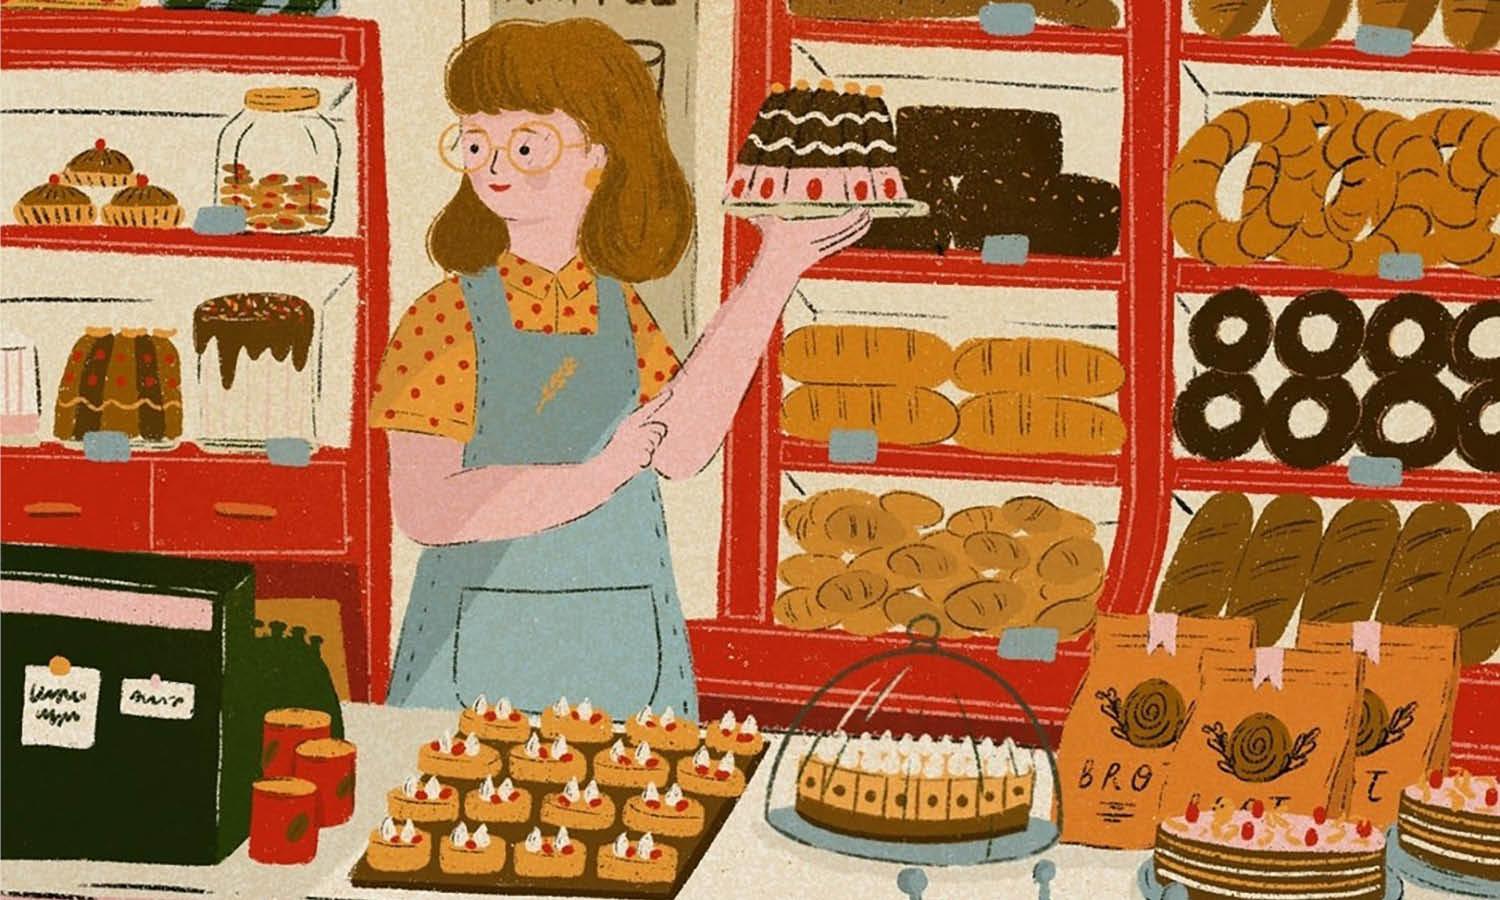 30 Best Baker Illustration Ideas You Should Check - Kreafolk